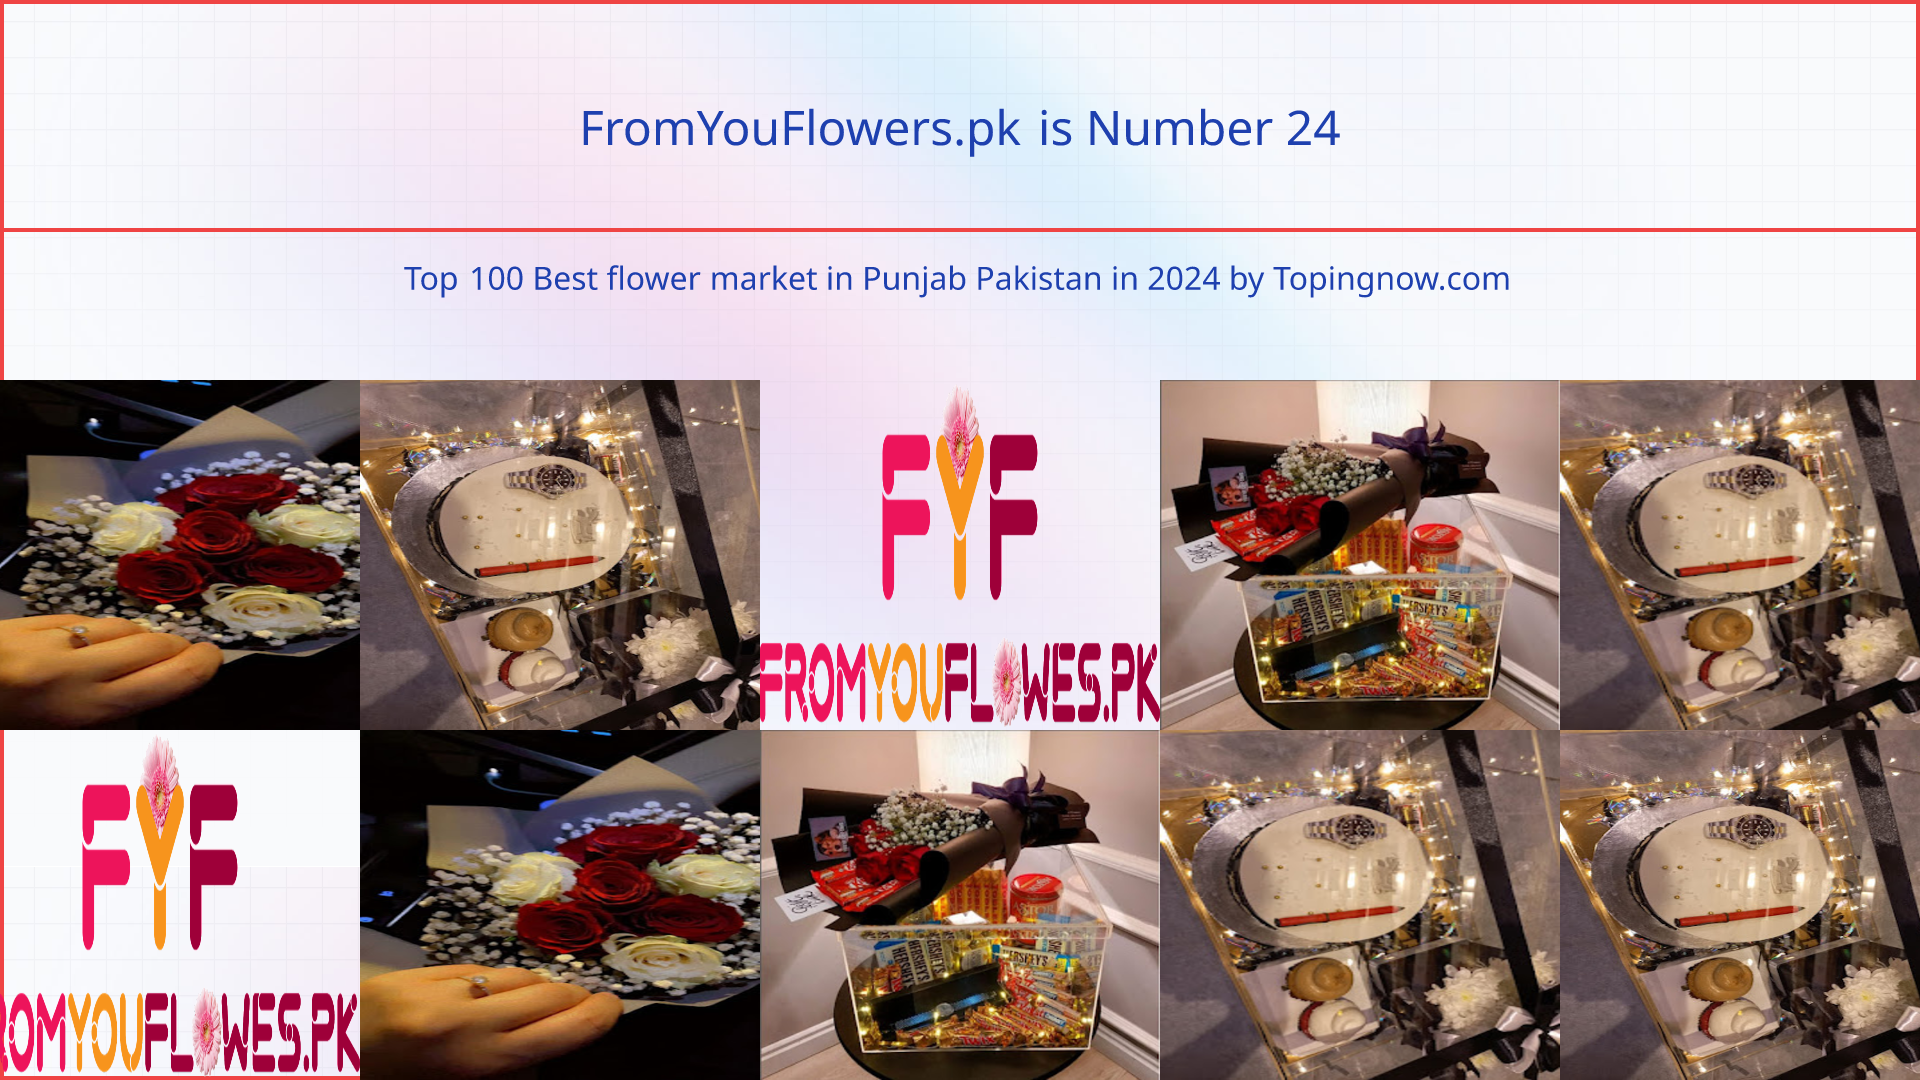 FromYouFlowers.pk: Top 100 Best flower market in Punjab Pakistan in 2024